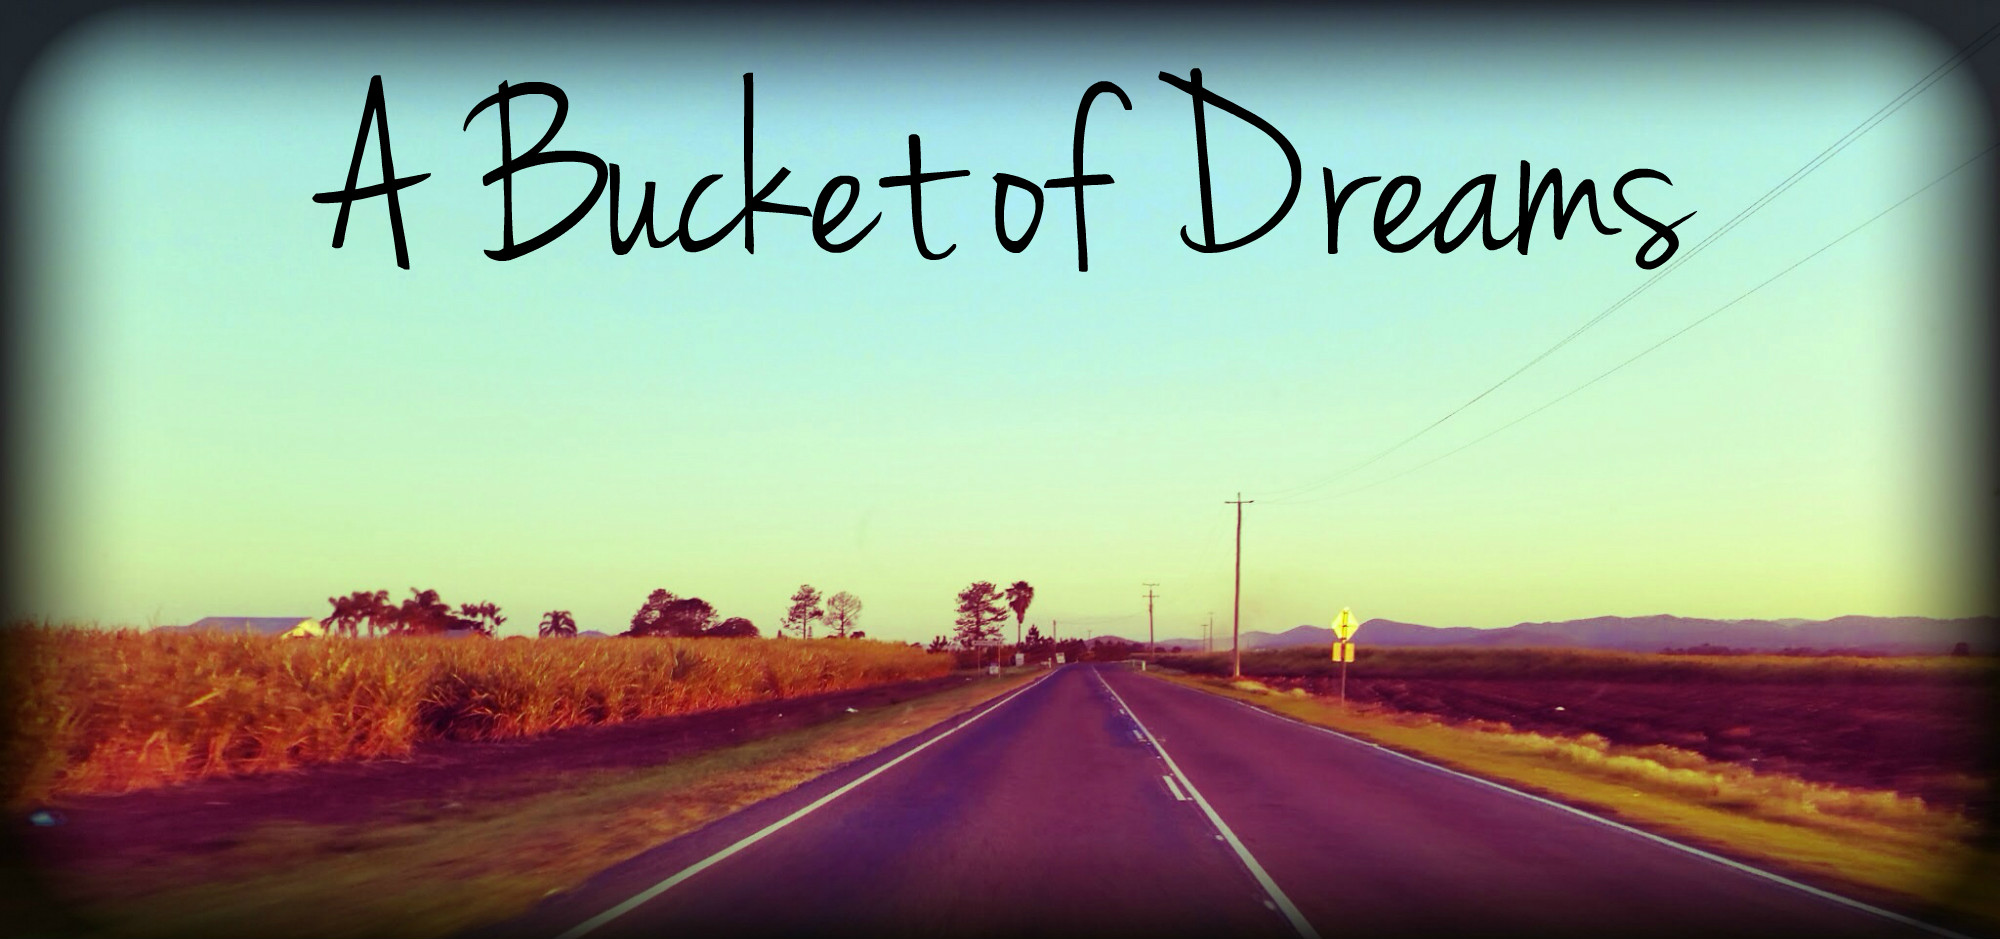 A Bucket of Dreams